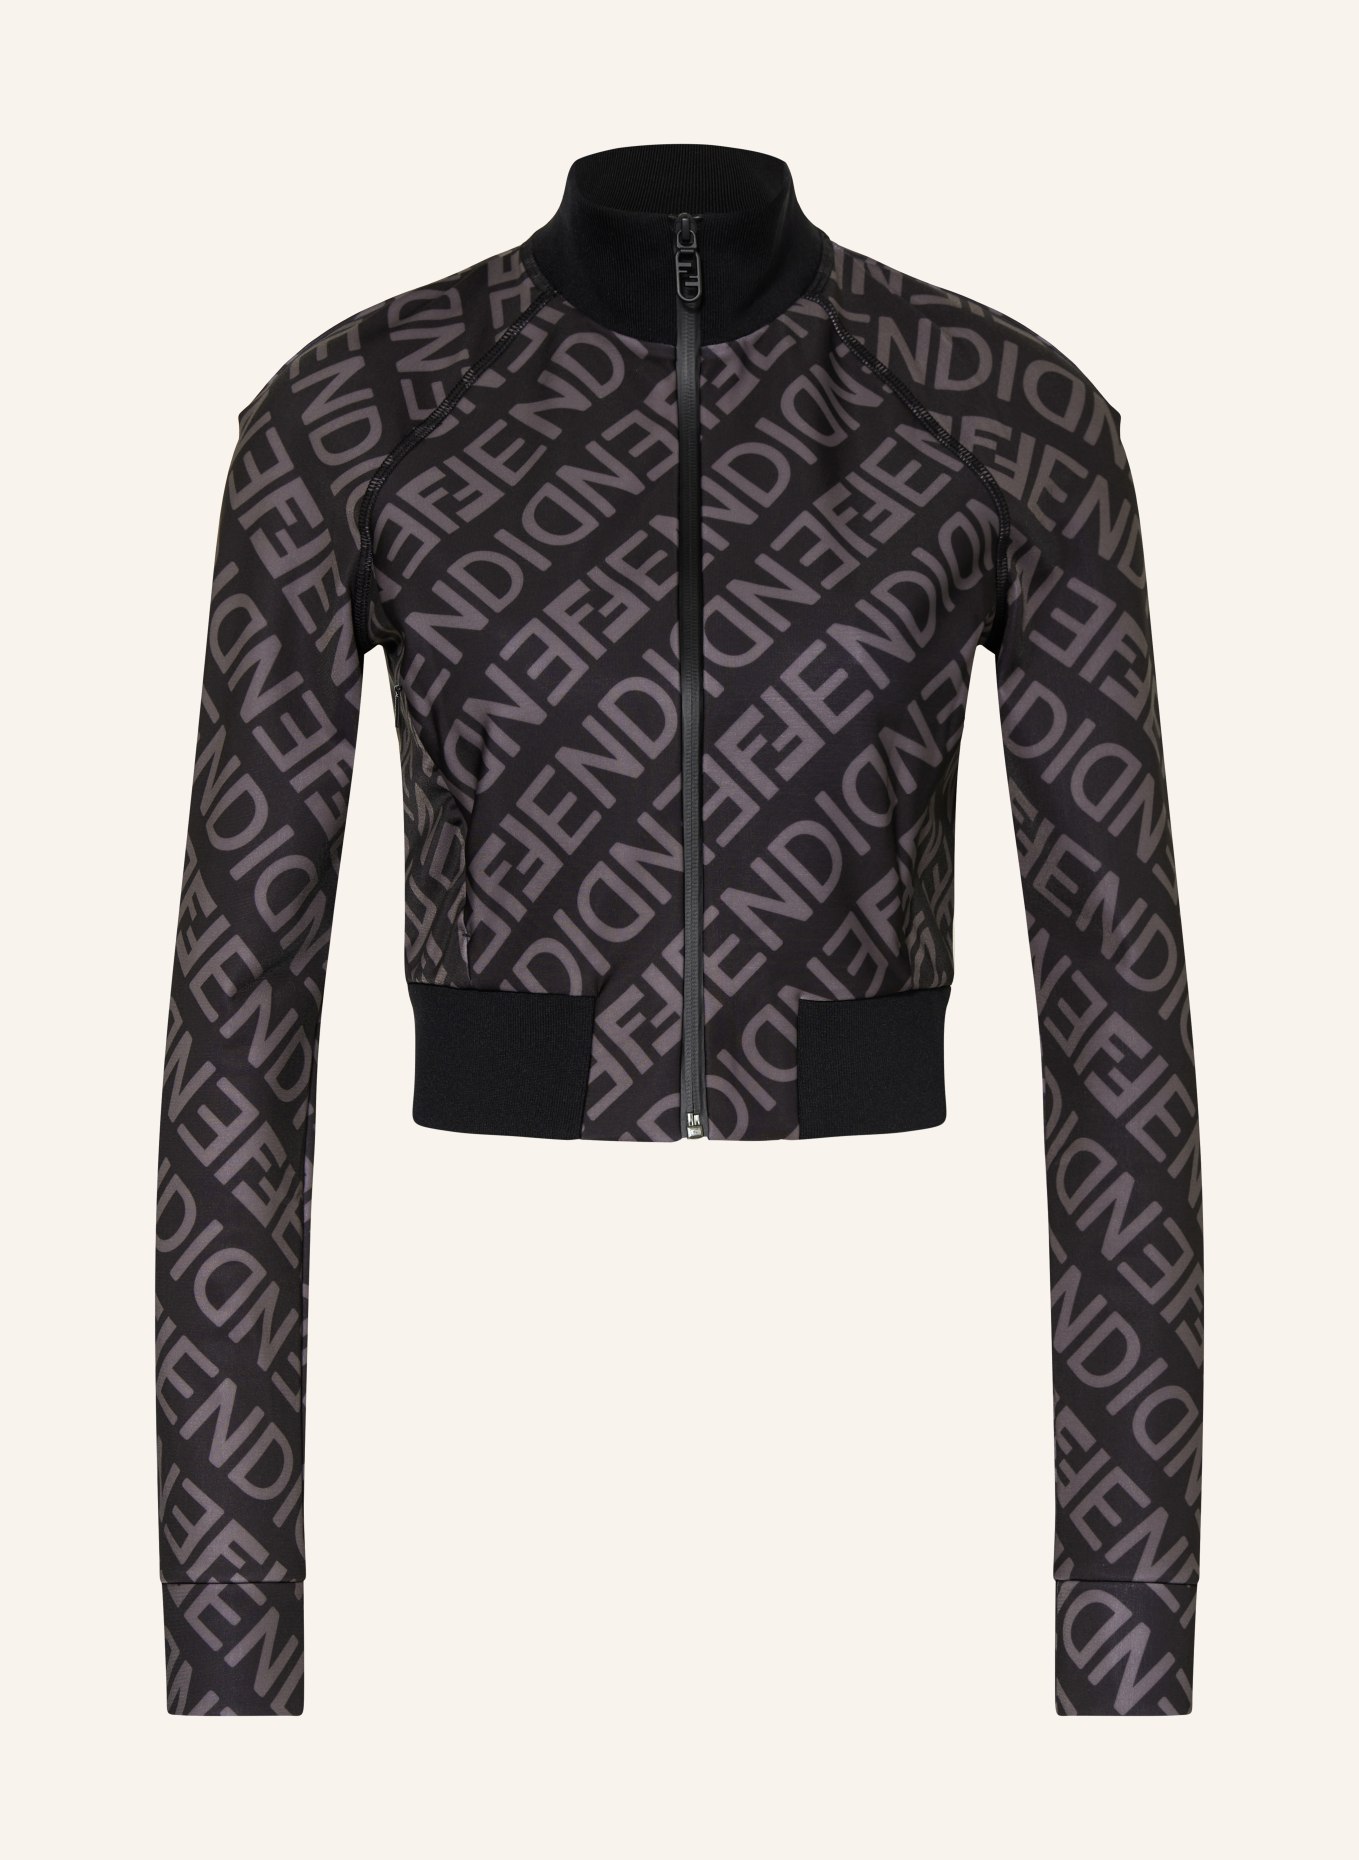 FENDI Training jacket, Color: BLACK/ GRAY (Image 1)